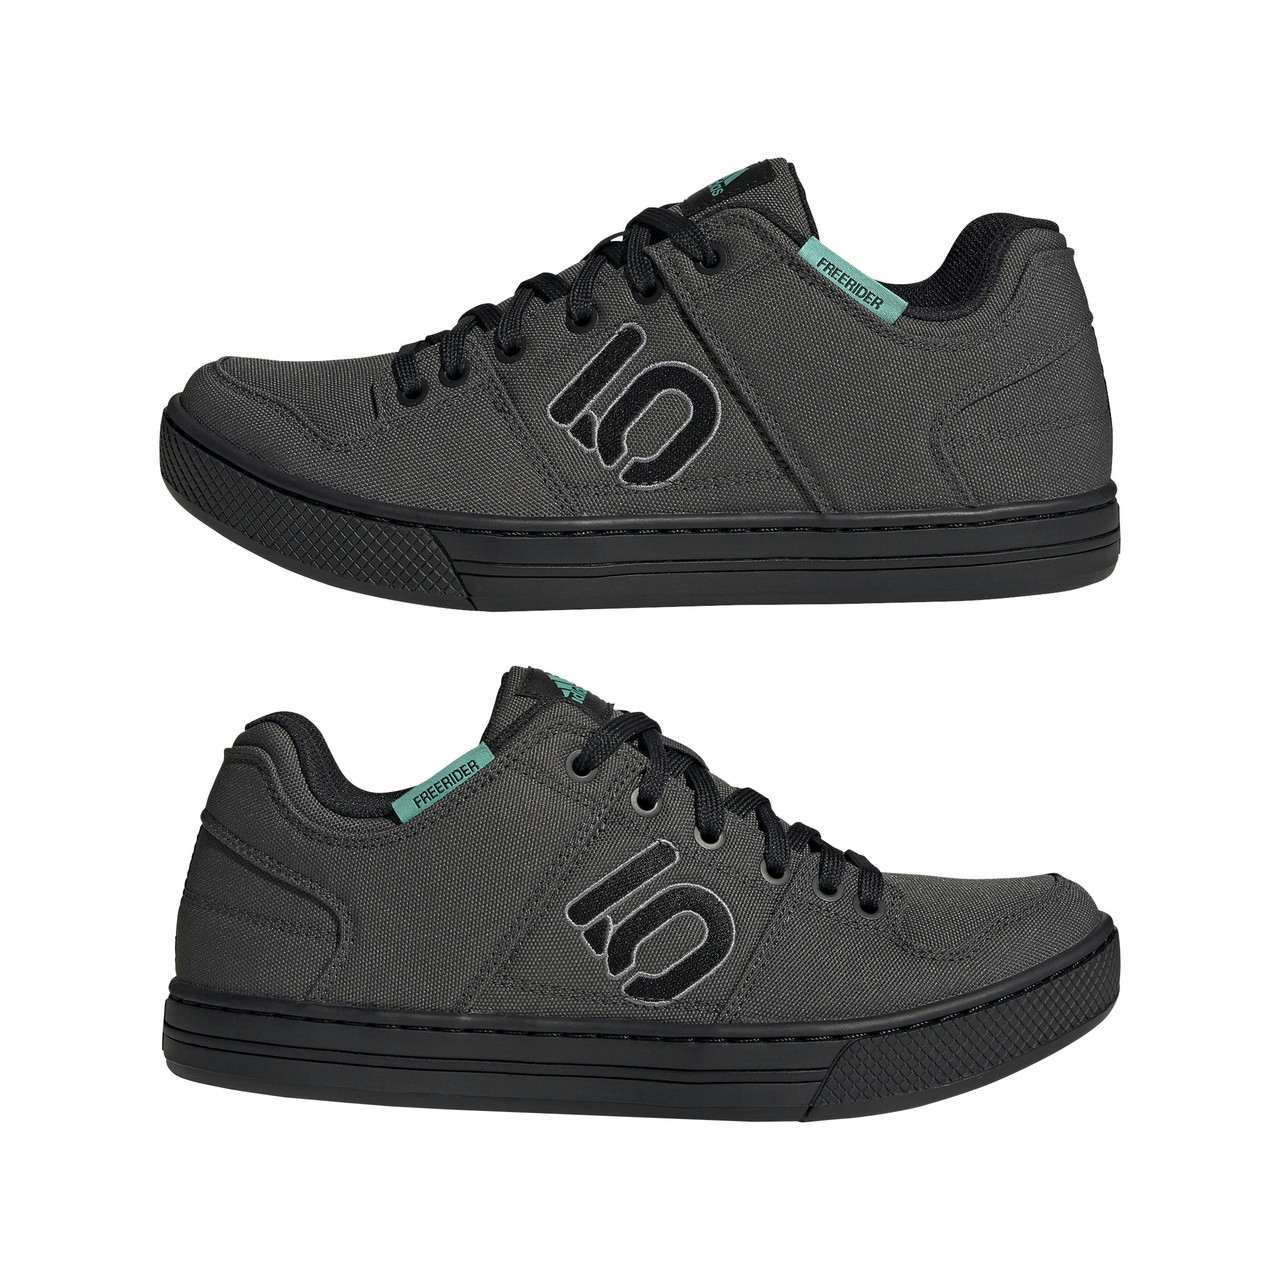 Chaussures en toile Freerider DGH Solid Grey/ Noir/Gris